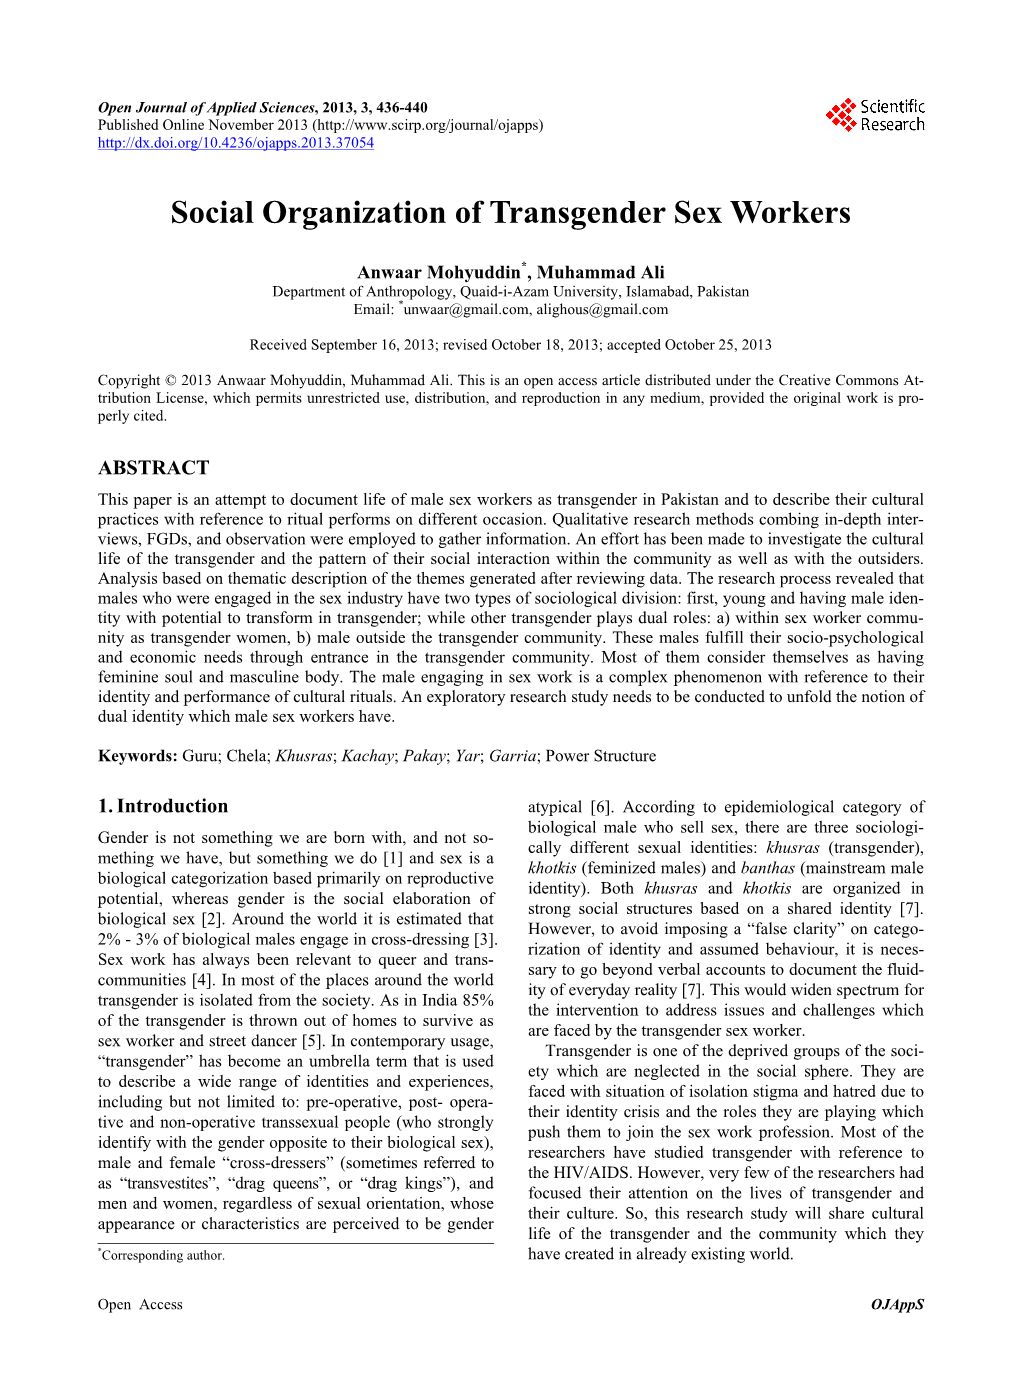 Social Organization of Transgender Sex Workers